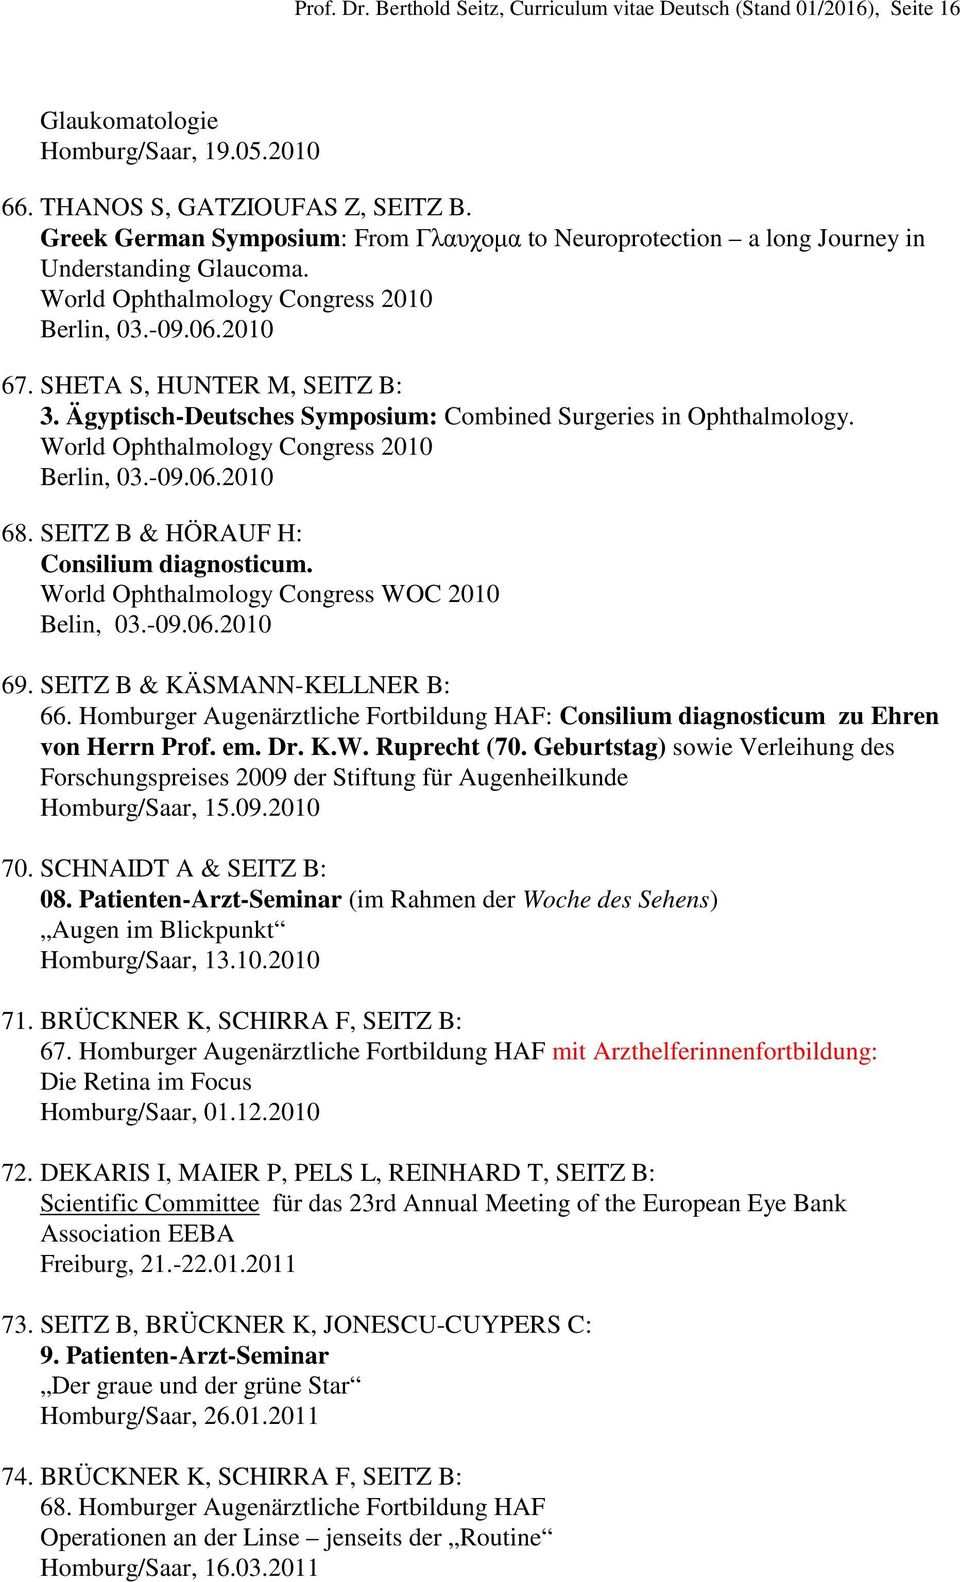 Ägyptisch-Deutsches Symposium: Combined Surgeries in Ophthalmology. World Ophthalmology Congress 2010 Berlin, 03.-09.06.2010 68. SEITZ B & HÖRAUF H: Consilium diagnosticum.